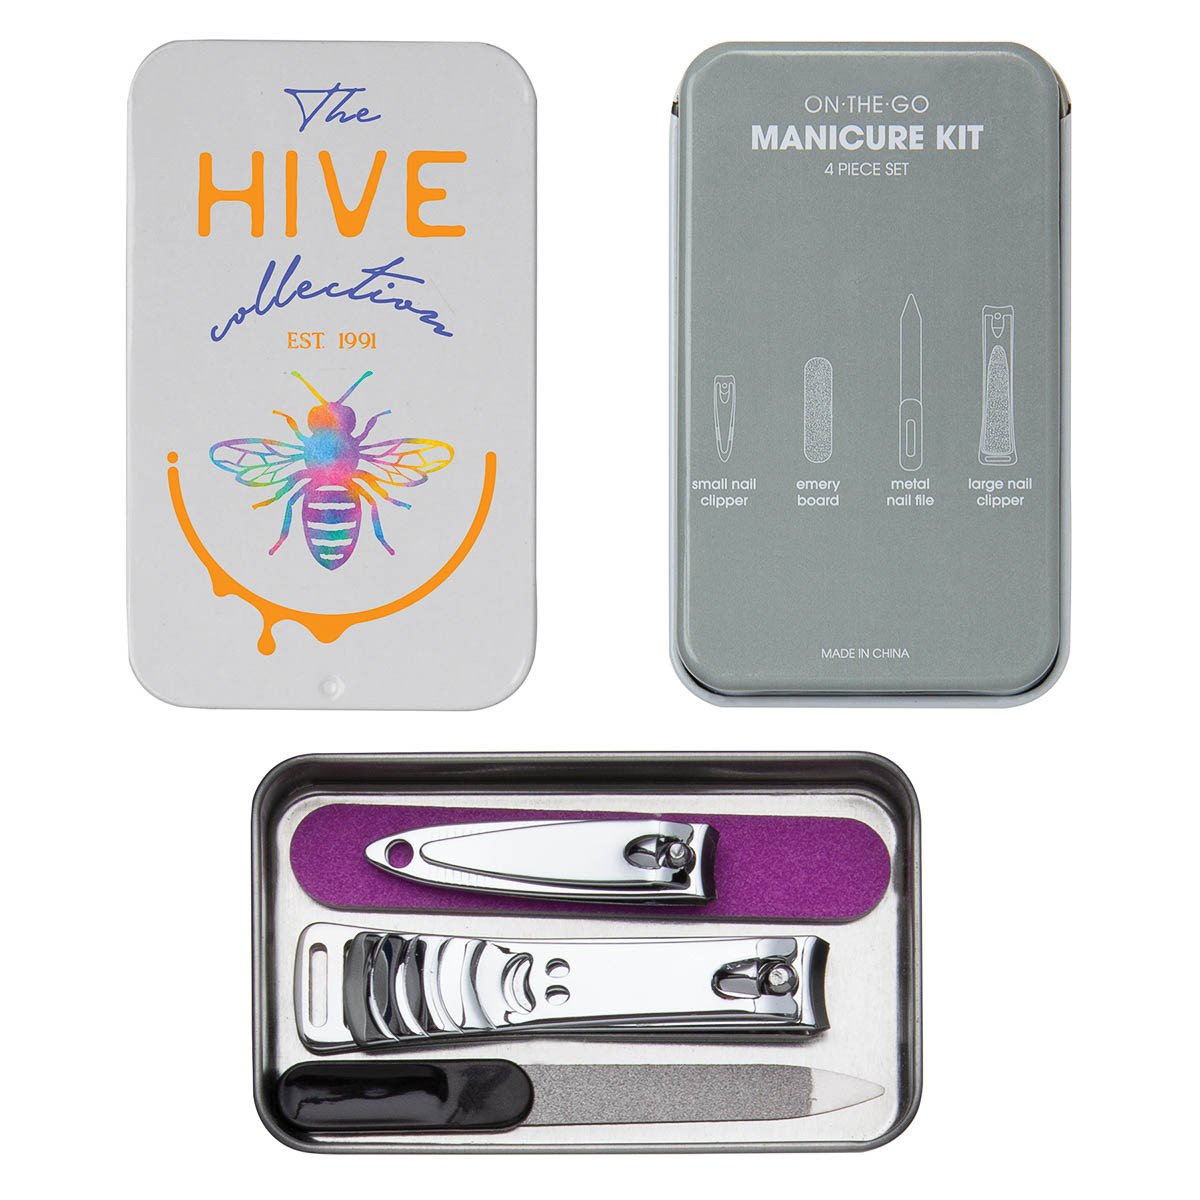 On the Go Mini Travel Manicure Kit | Reusable